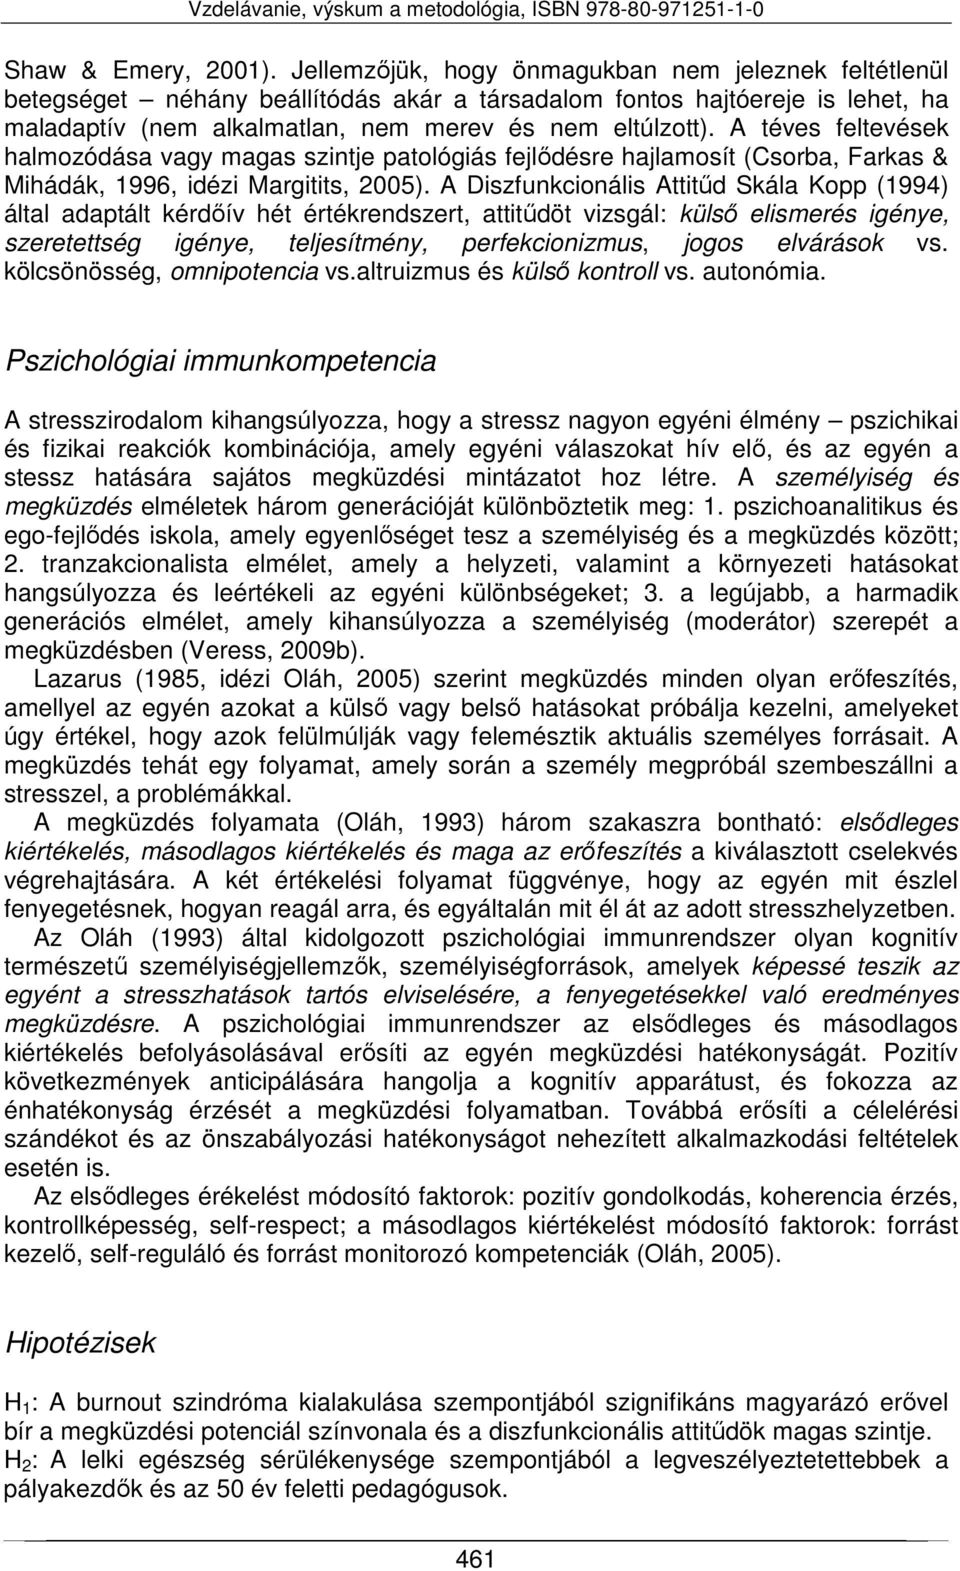 A téves feltevések halmozódása vagy magas szintje patológiás fejlődésre hajlamosít (Csorba, Farkas & Mihádák, 1996, idézi Margitits, 2005).